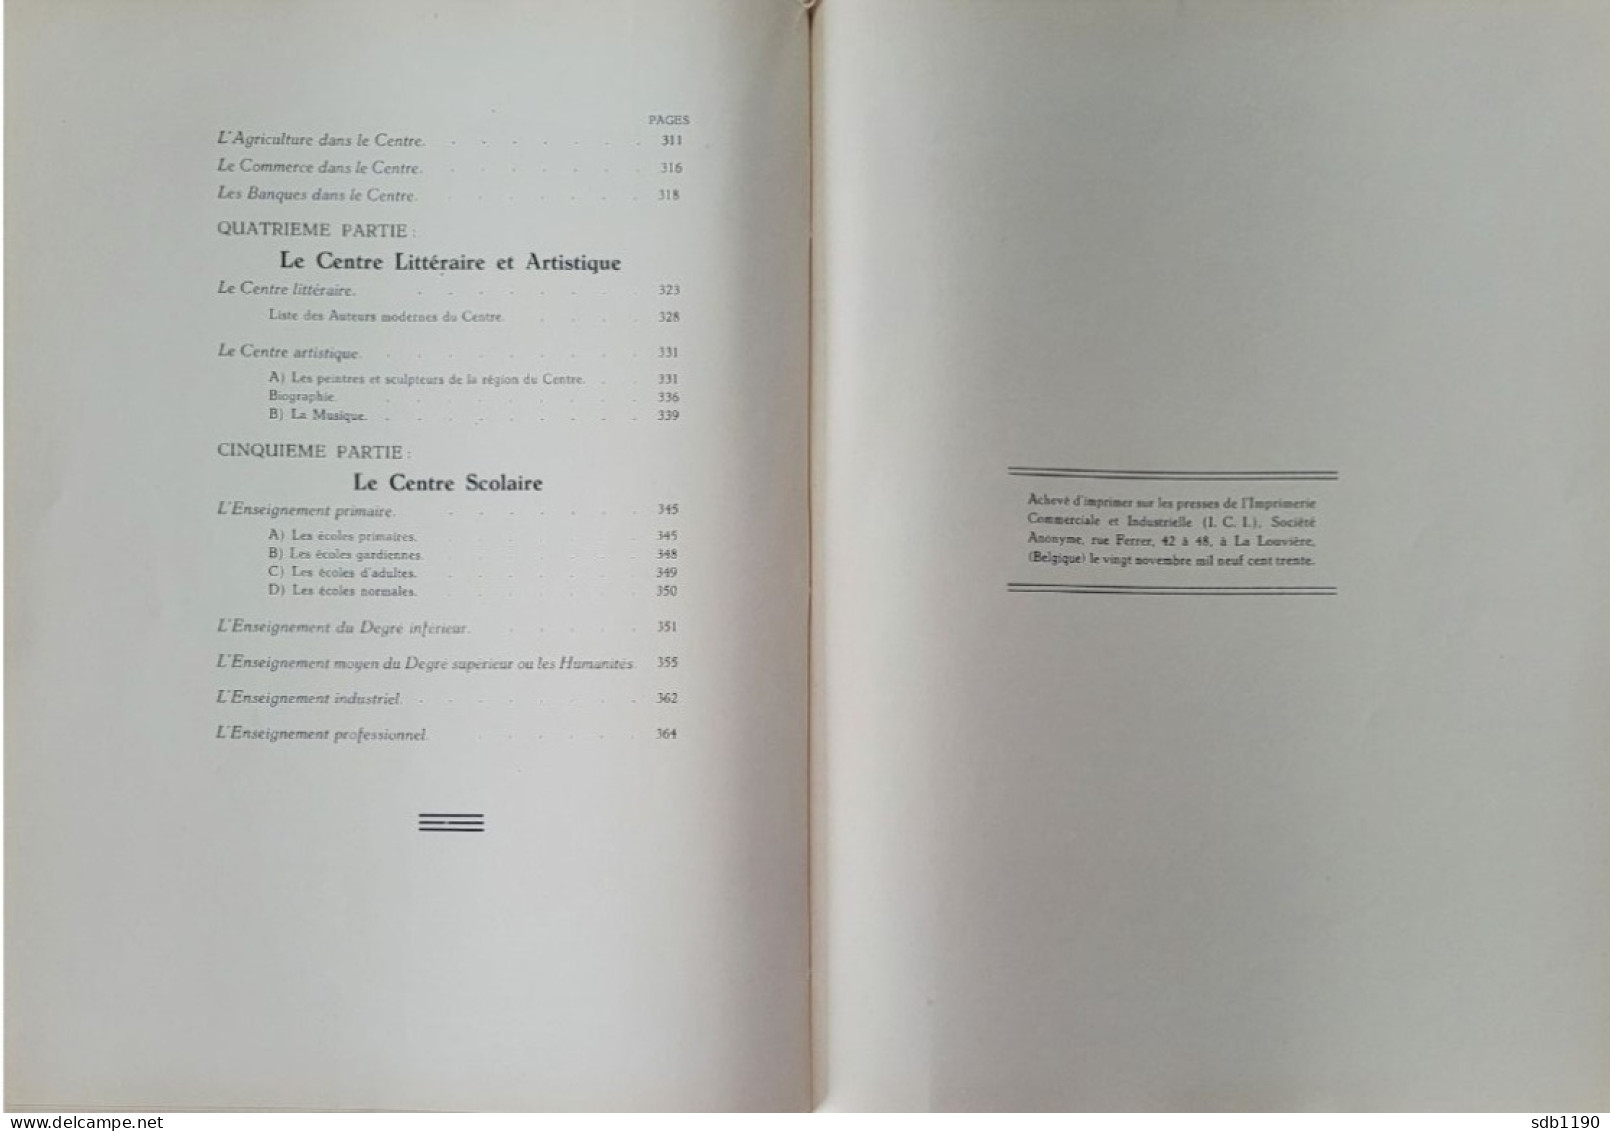 Livre 'Le Centre Archéologique, Folklorique, Industriel, Commercial, Artistique, Scolaire' 1930 Avec 317 Illustrations - Archeology